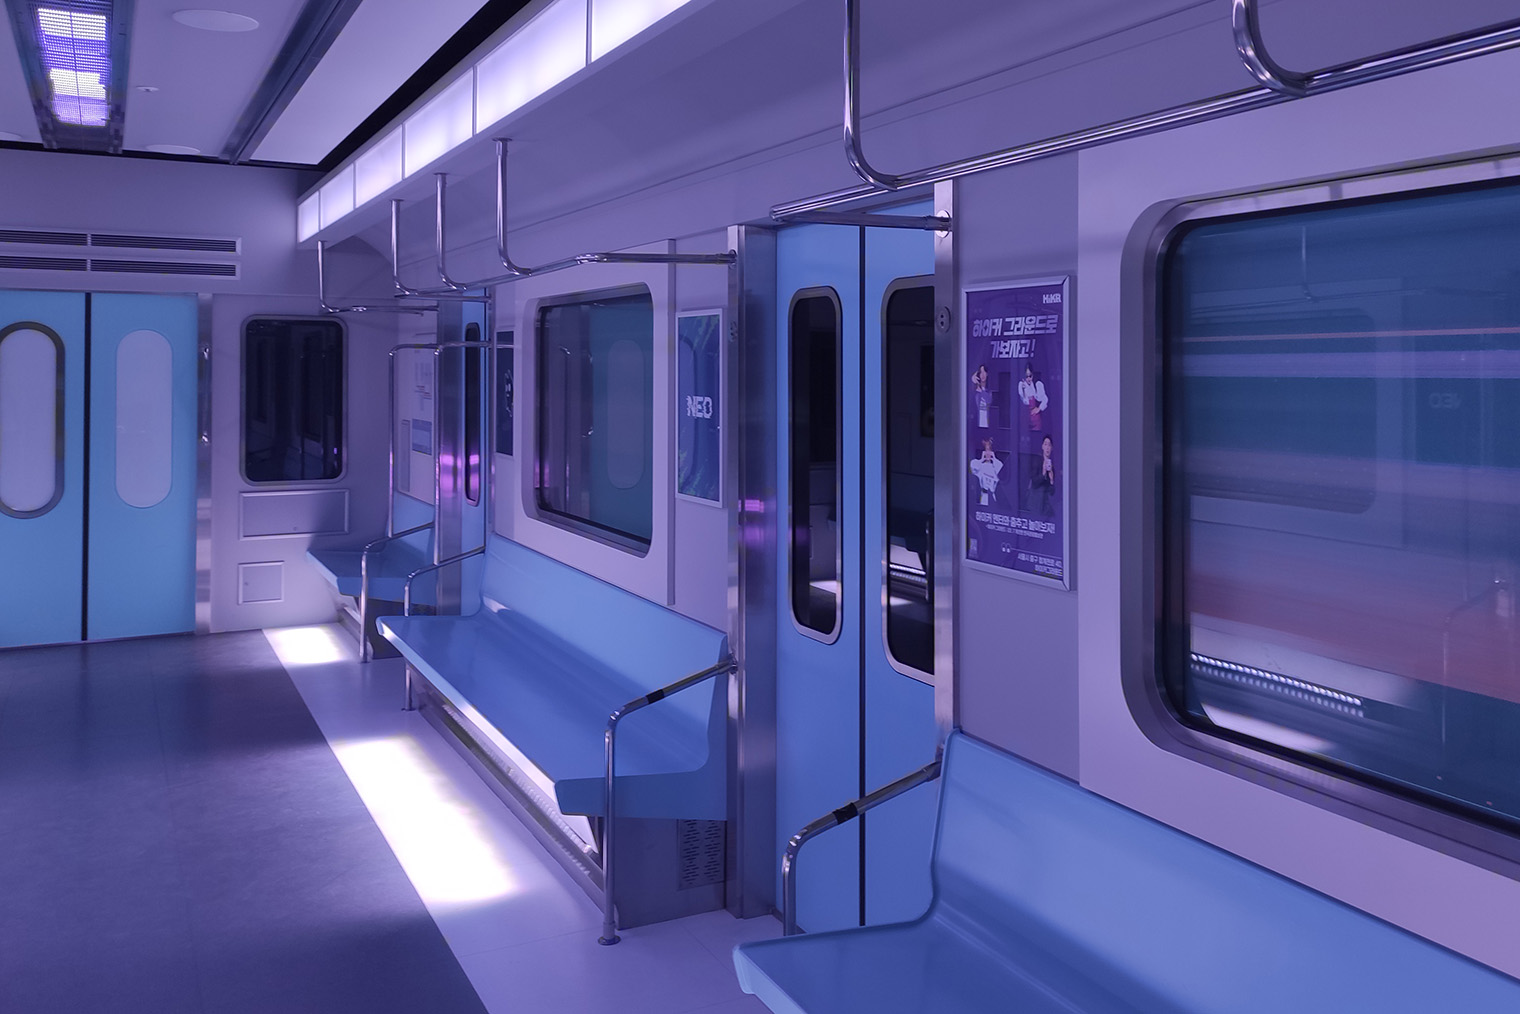 Вагон метро — самая популярная локация для фотографий на память. Мы с дочкой, правда, фотографироваться не любим